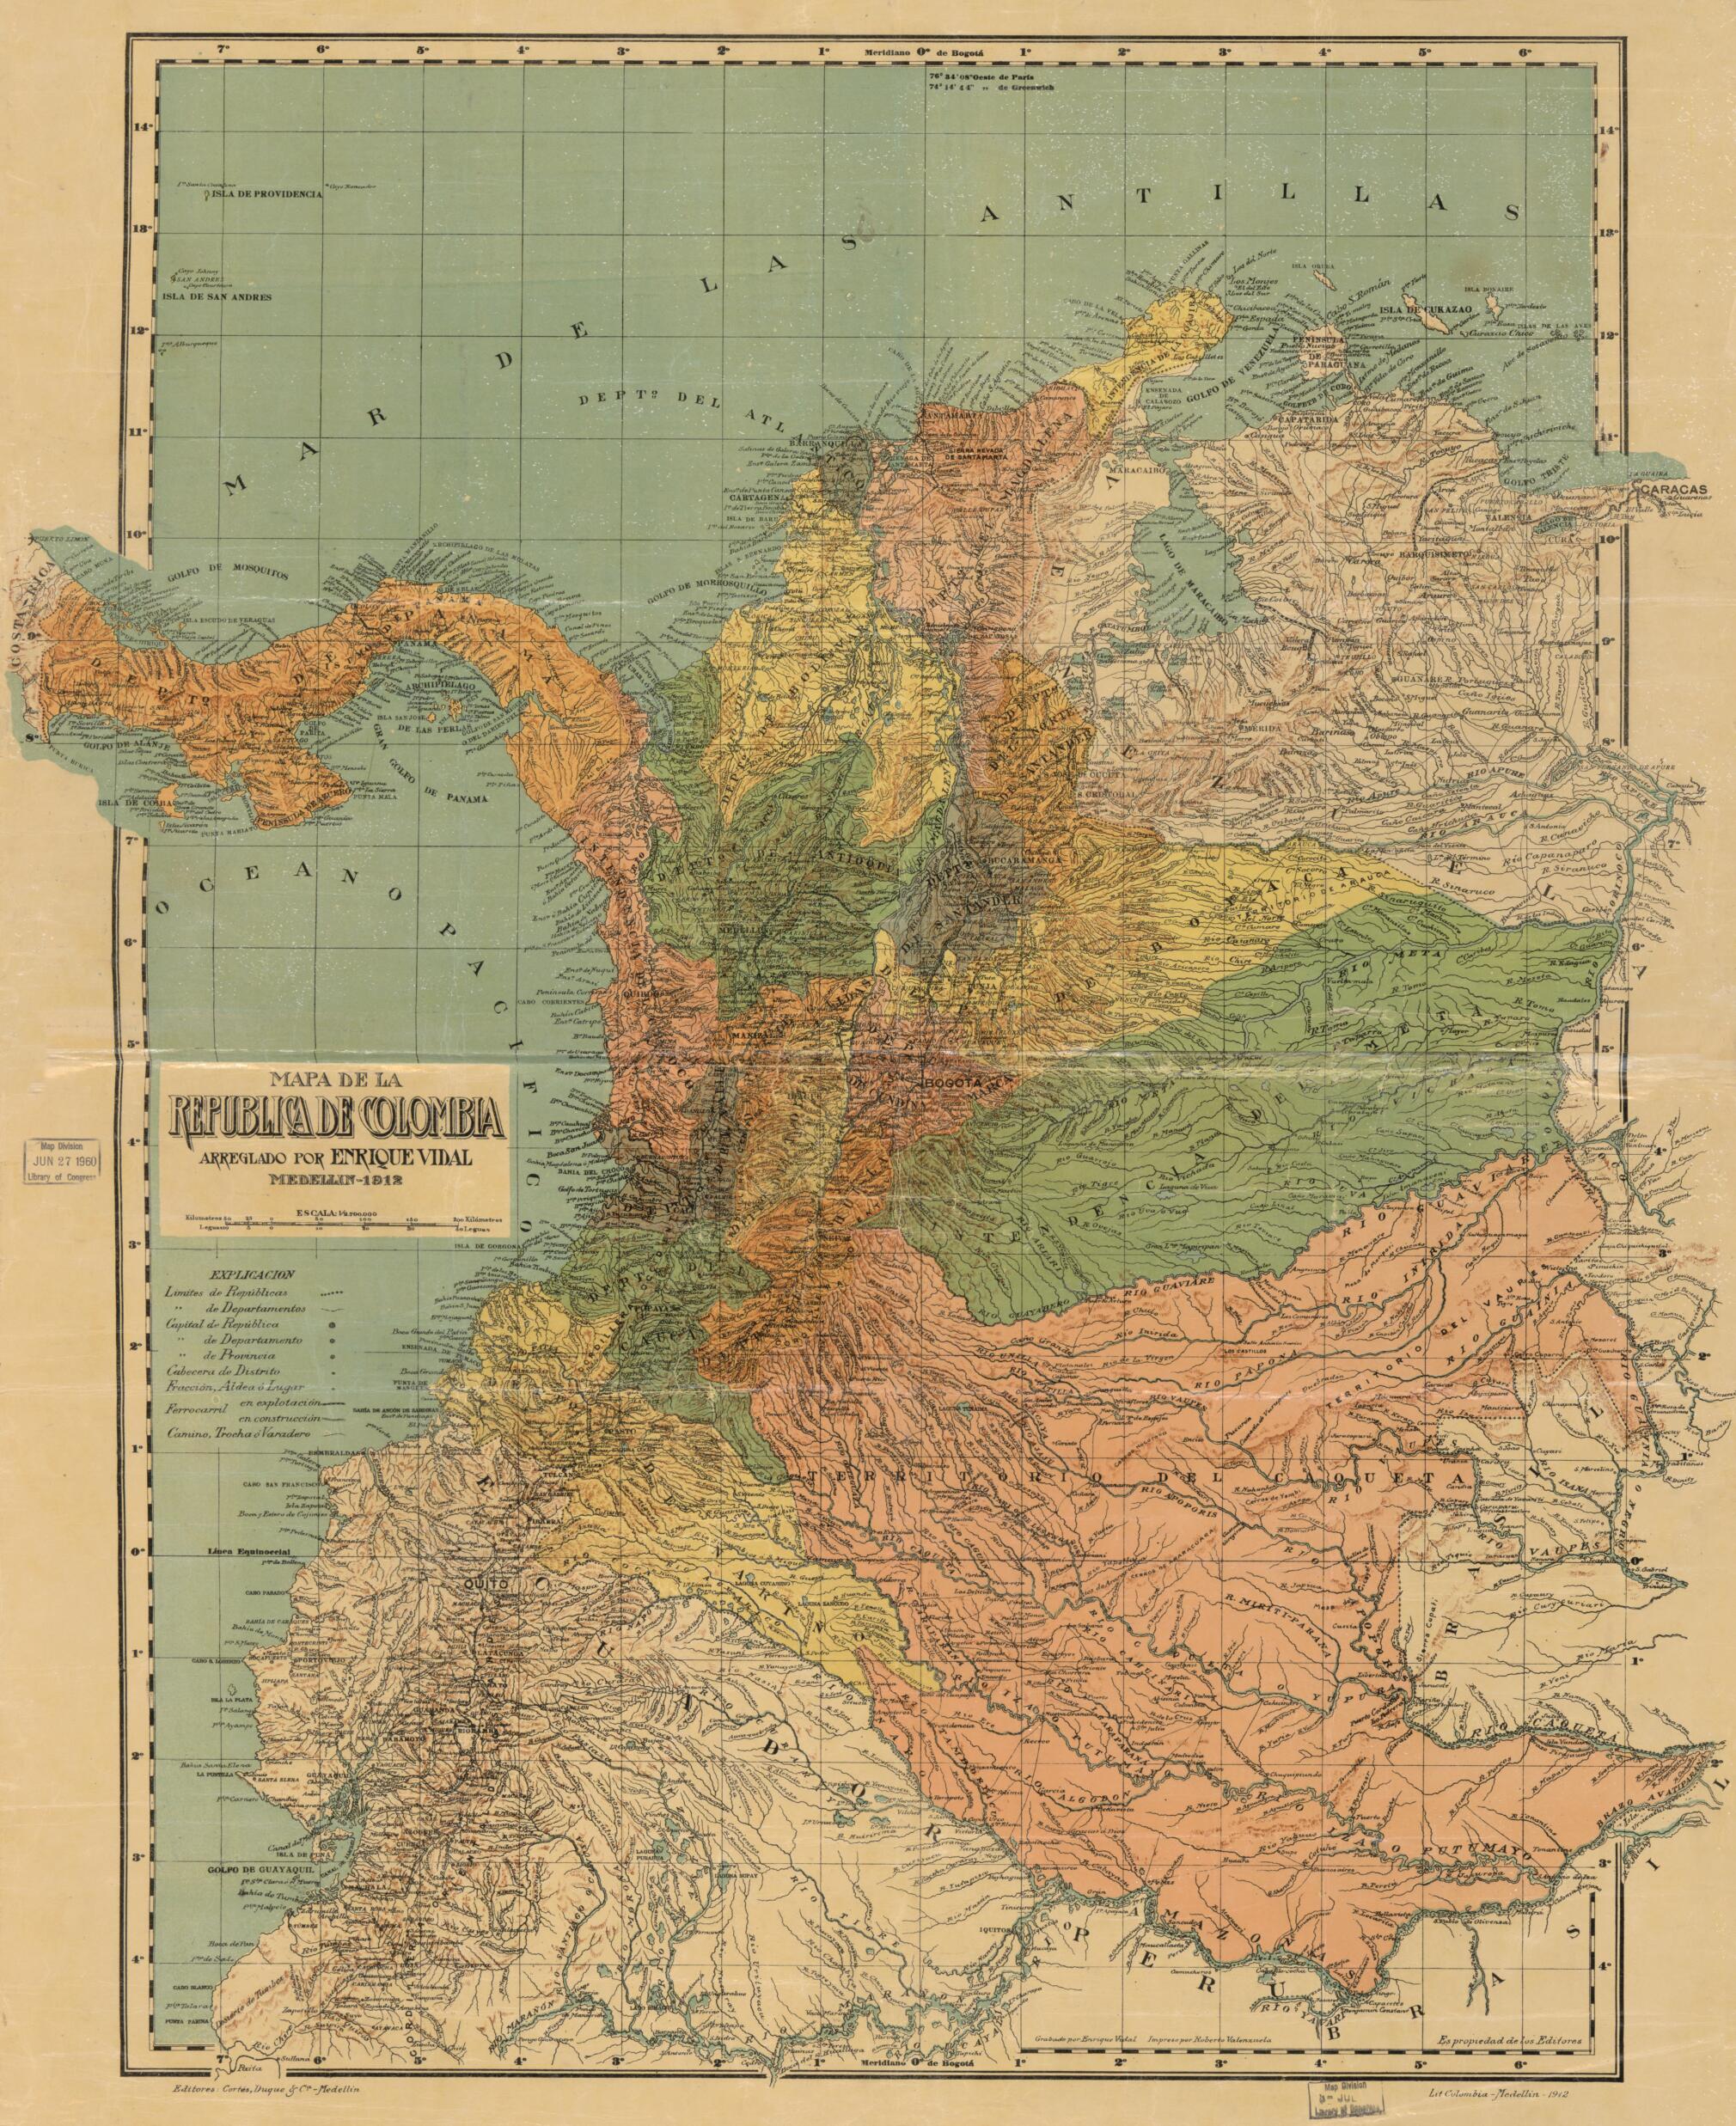 This old map of Mapa De La Republica De Colombia from 1912 was created by Enrique Vidal in 1912